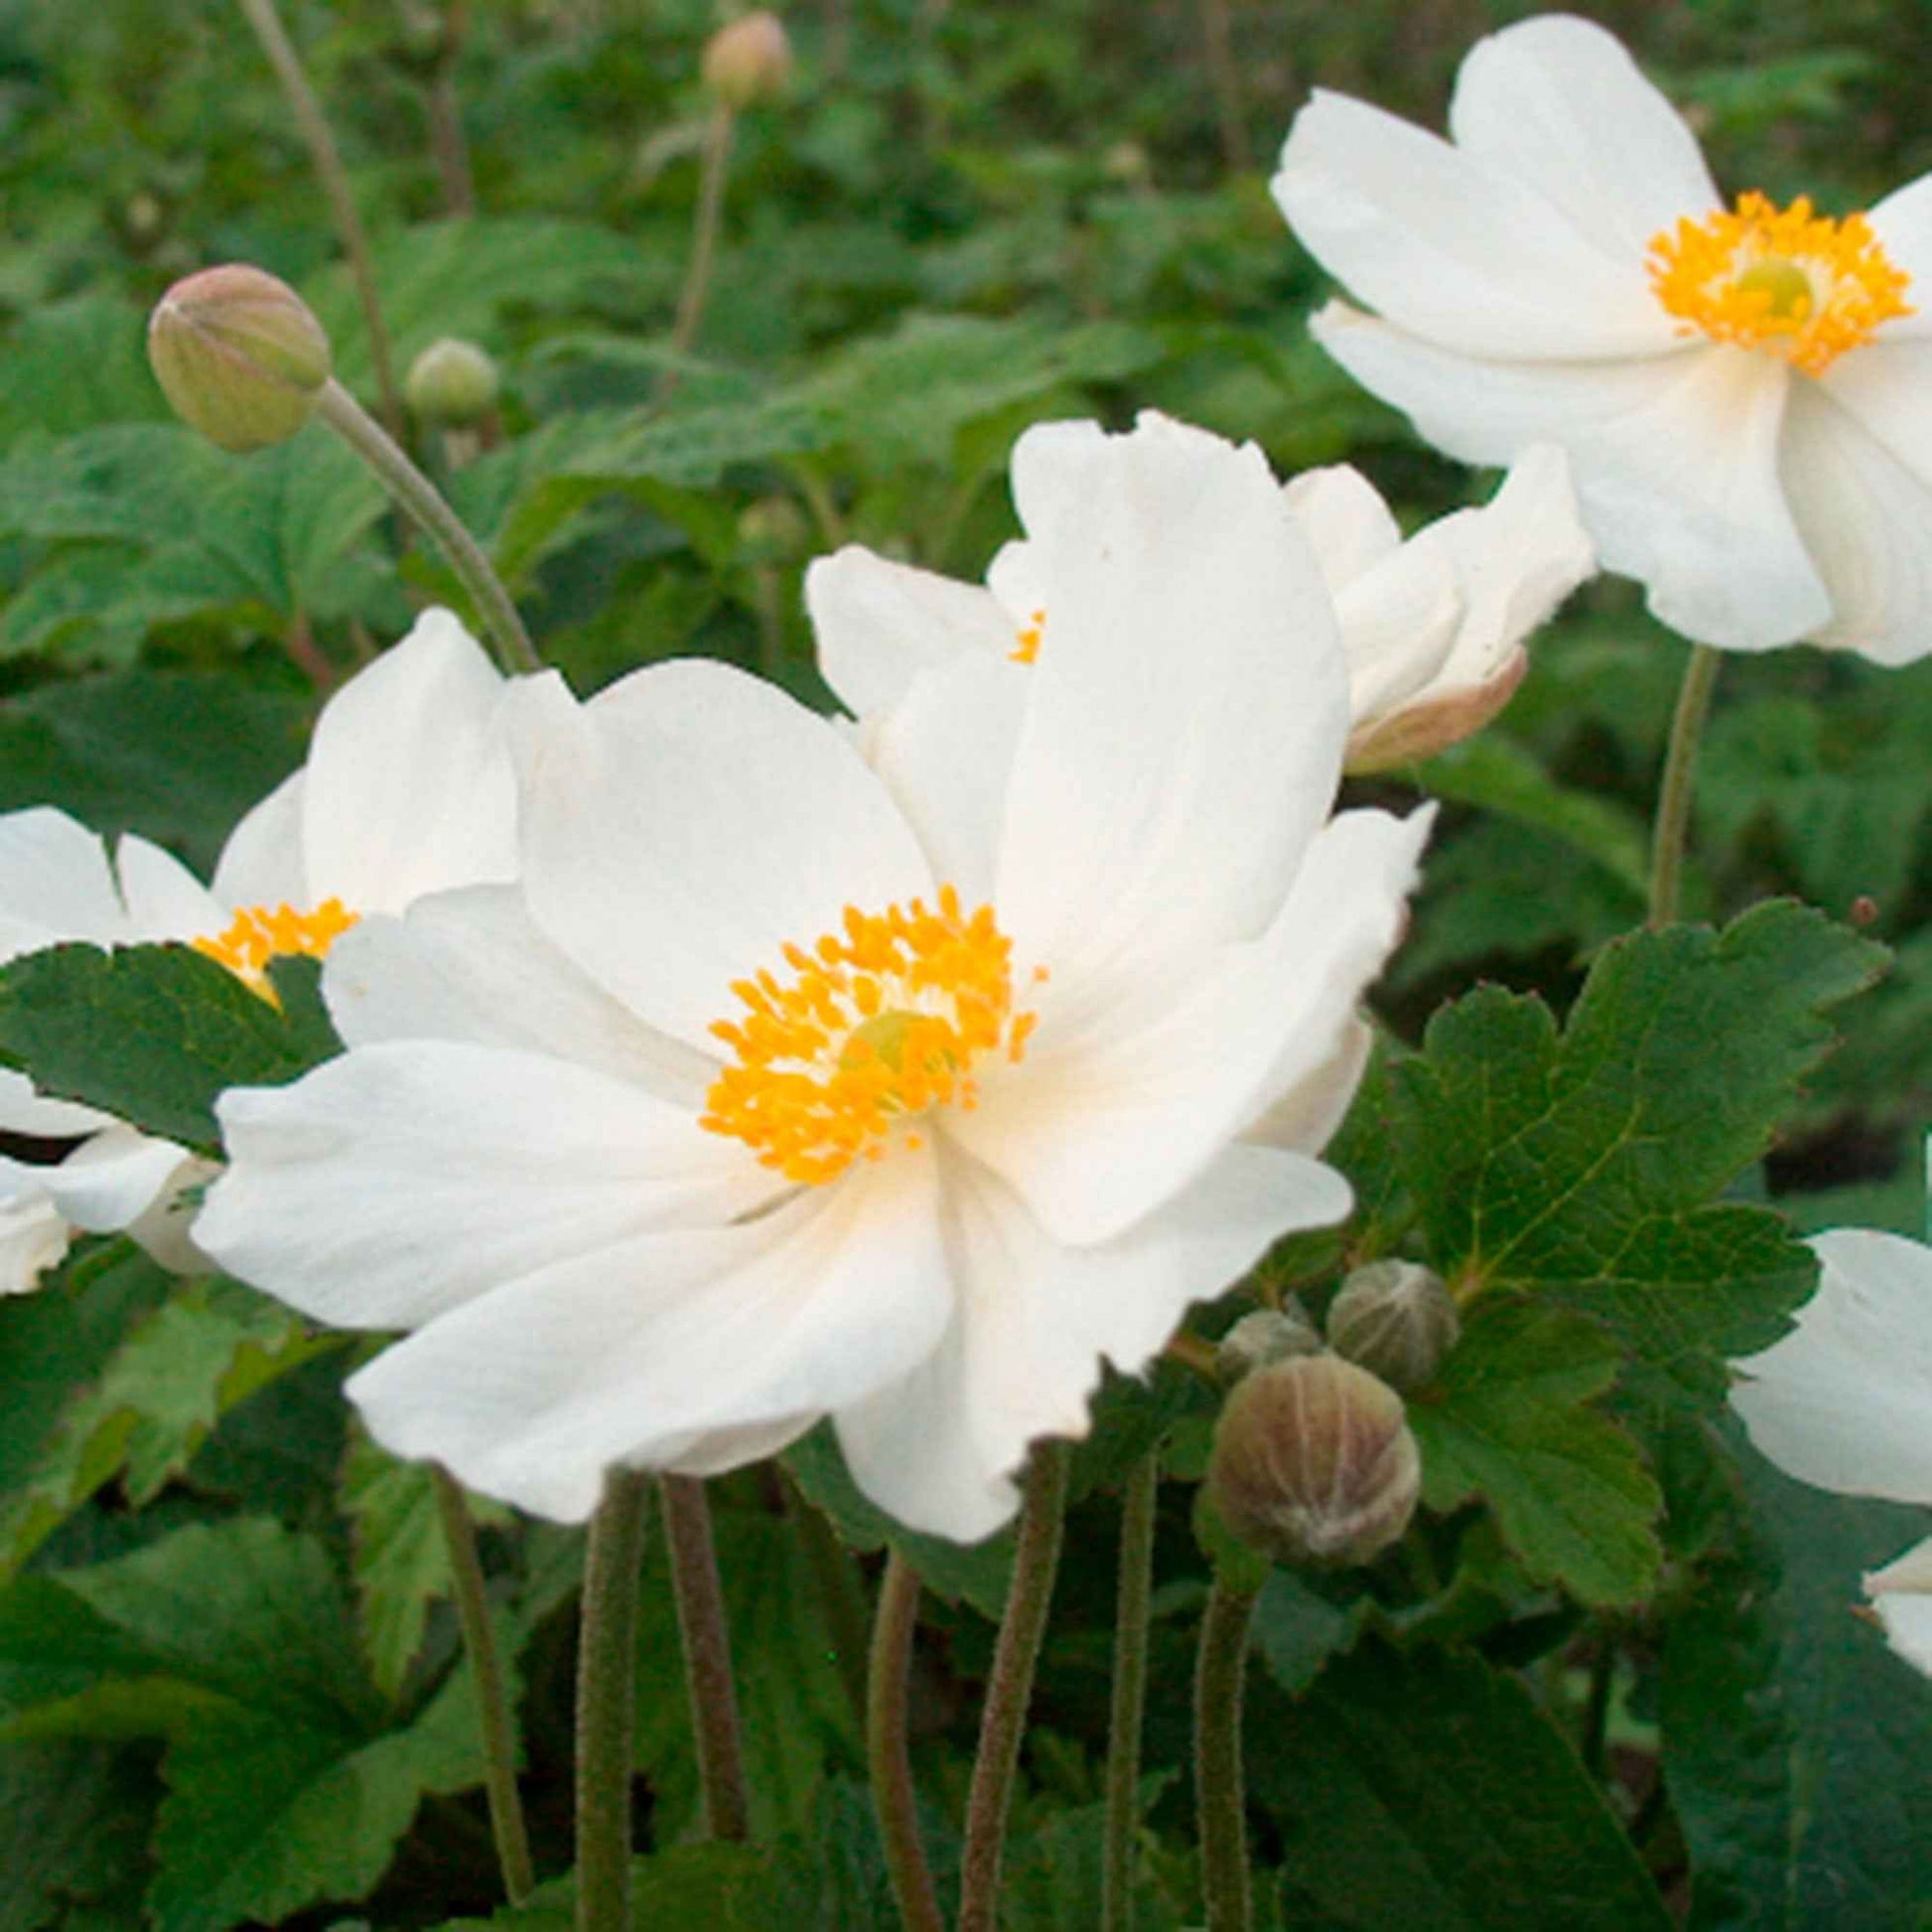 Achetez maintenant une plante vivace Anémone d'automne Anemone 'Honorine  Jobert' - Biologique blanc | Bakker.com